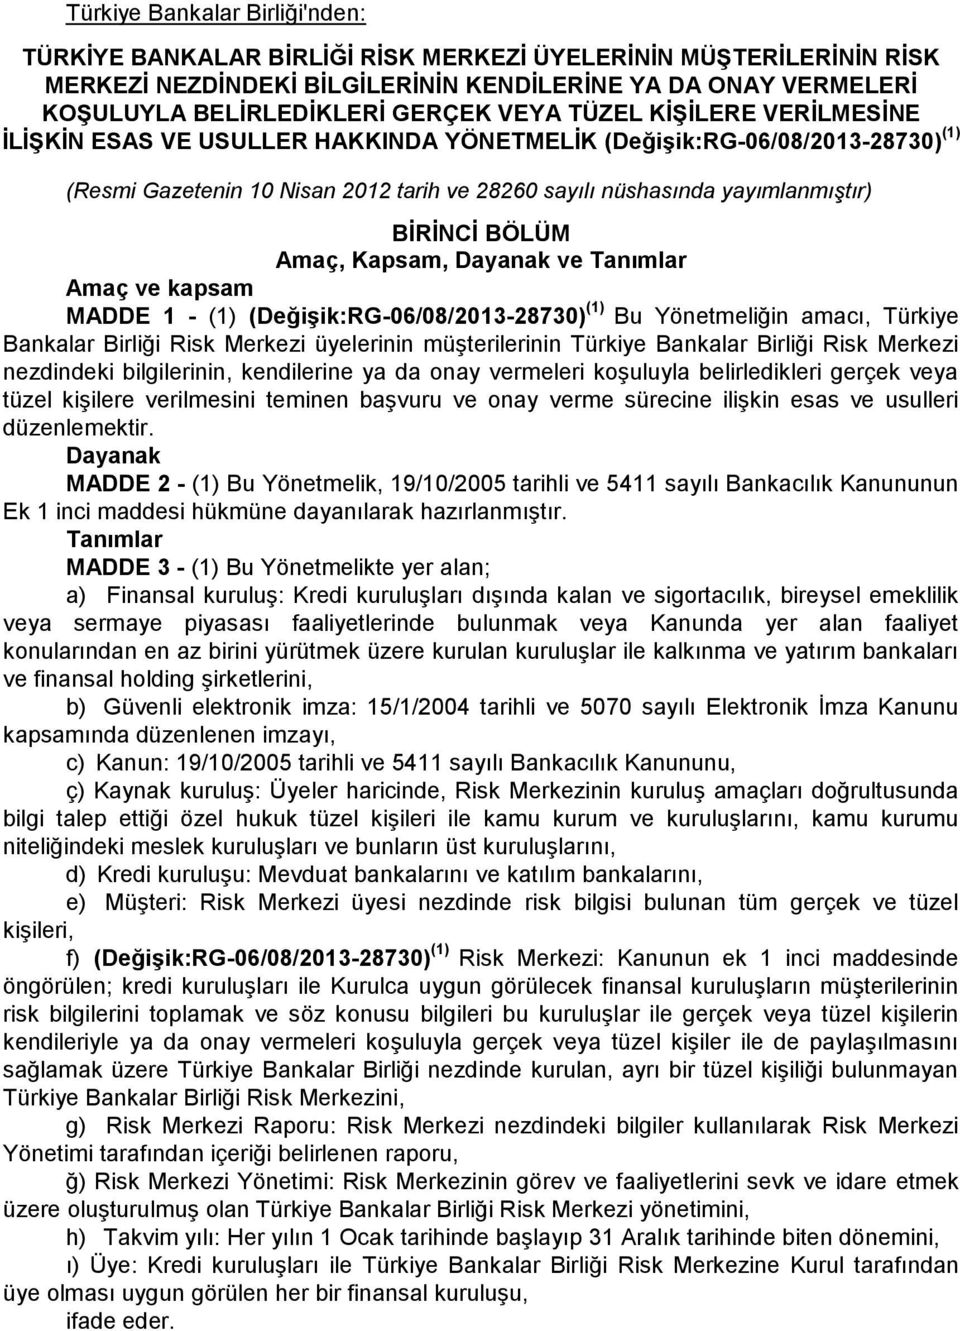 BÖLÜM Amaç, Kapsam, Dayanak ve Tanımlar Amaç ve kapsam MADDE 1 - (1) (Değişik:RG-06/08/2013-28730) (1) Bu Yönetmeliğin amacı, Türkiye Bankalar Birliği Risk Merkezi üyelerinin müşterilerinin Türkiye